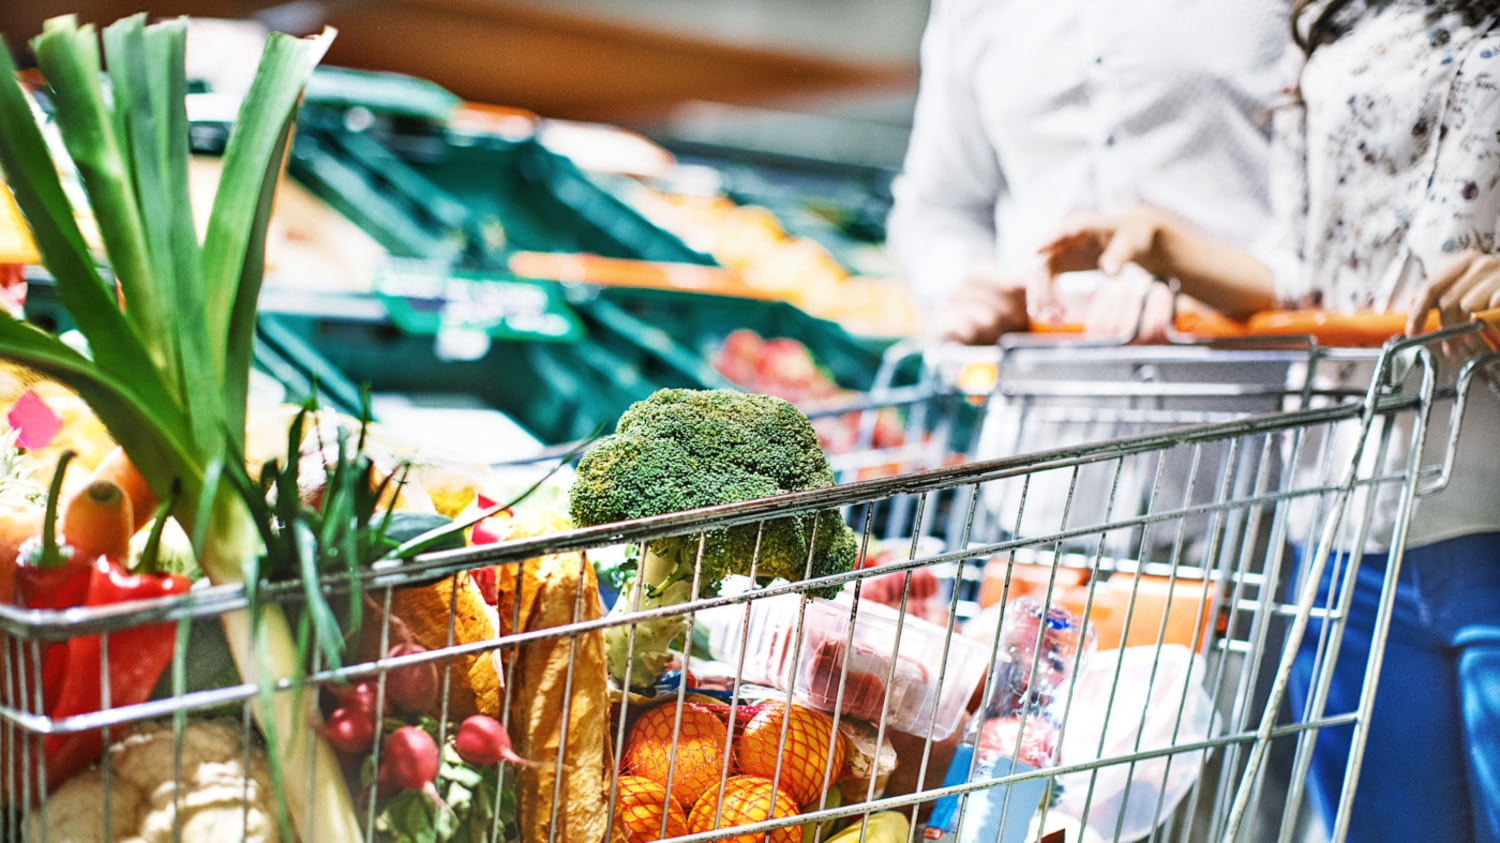 Einkaufswagen im Supermarkt gefüllt mit Lebensmitteln